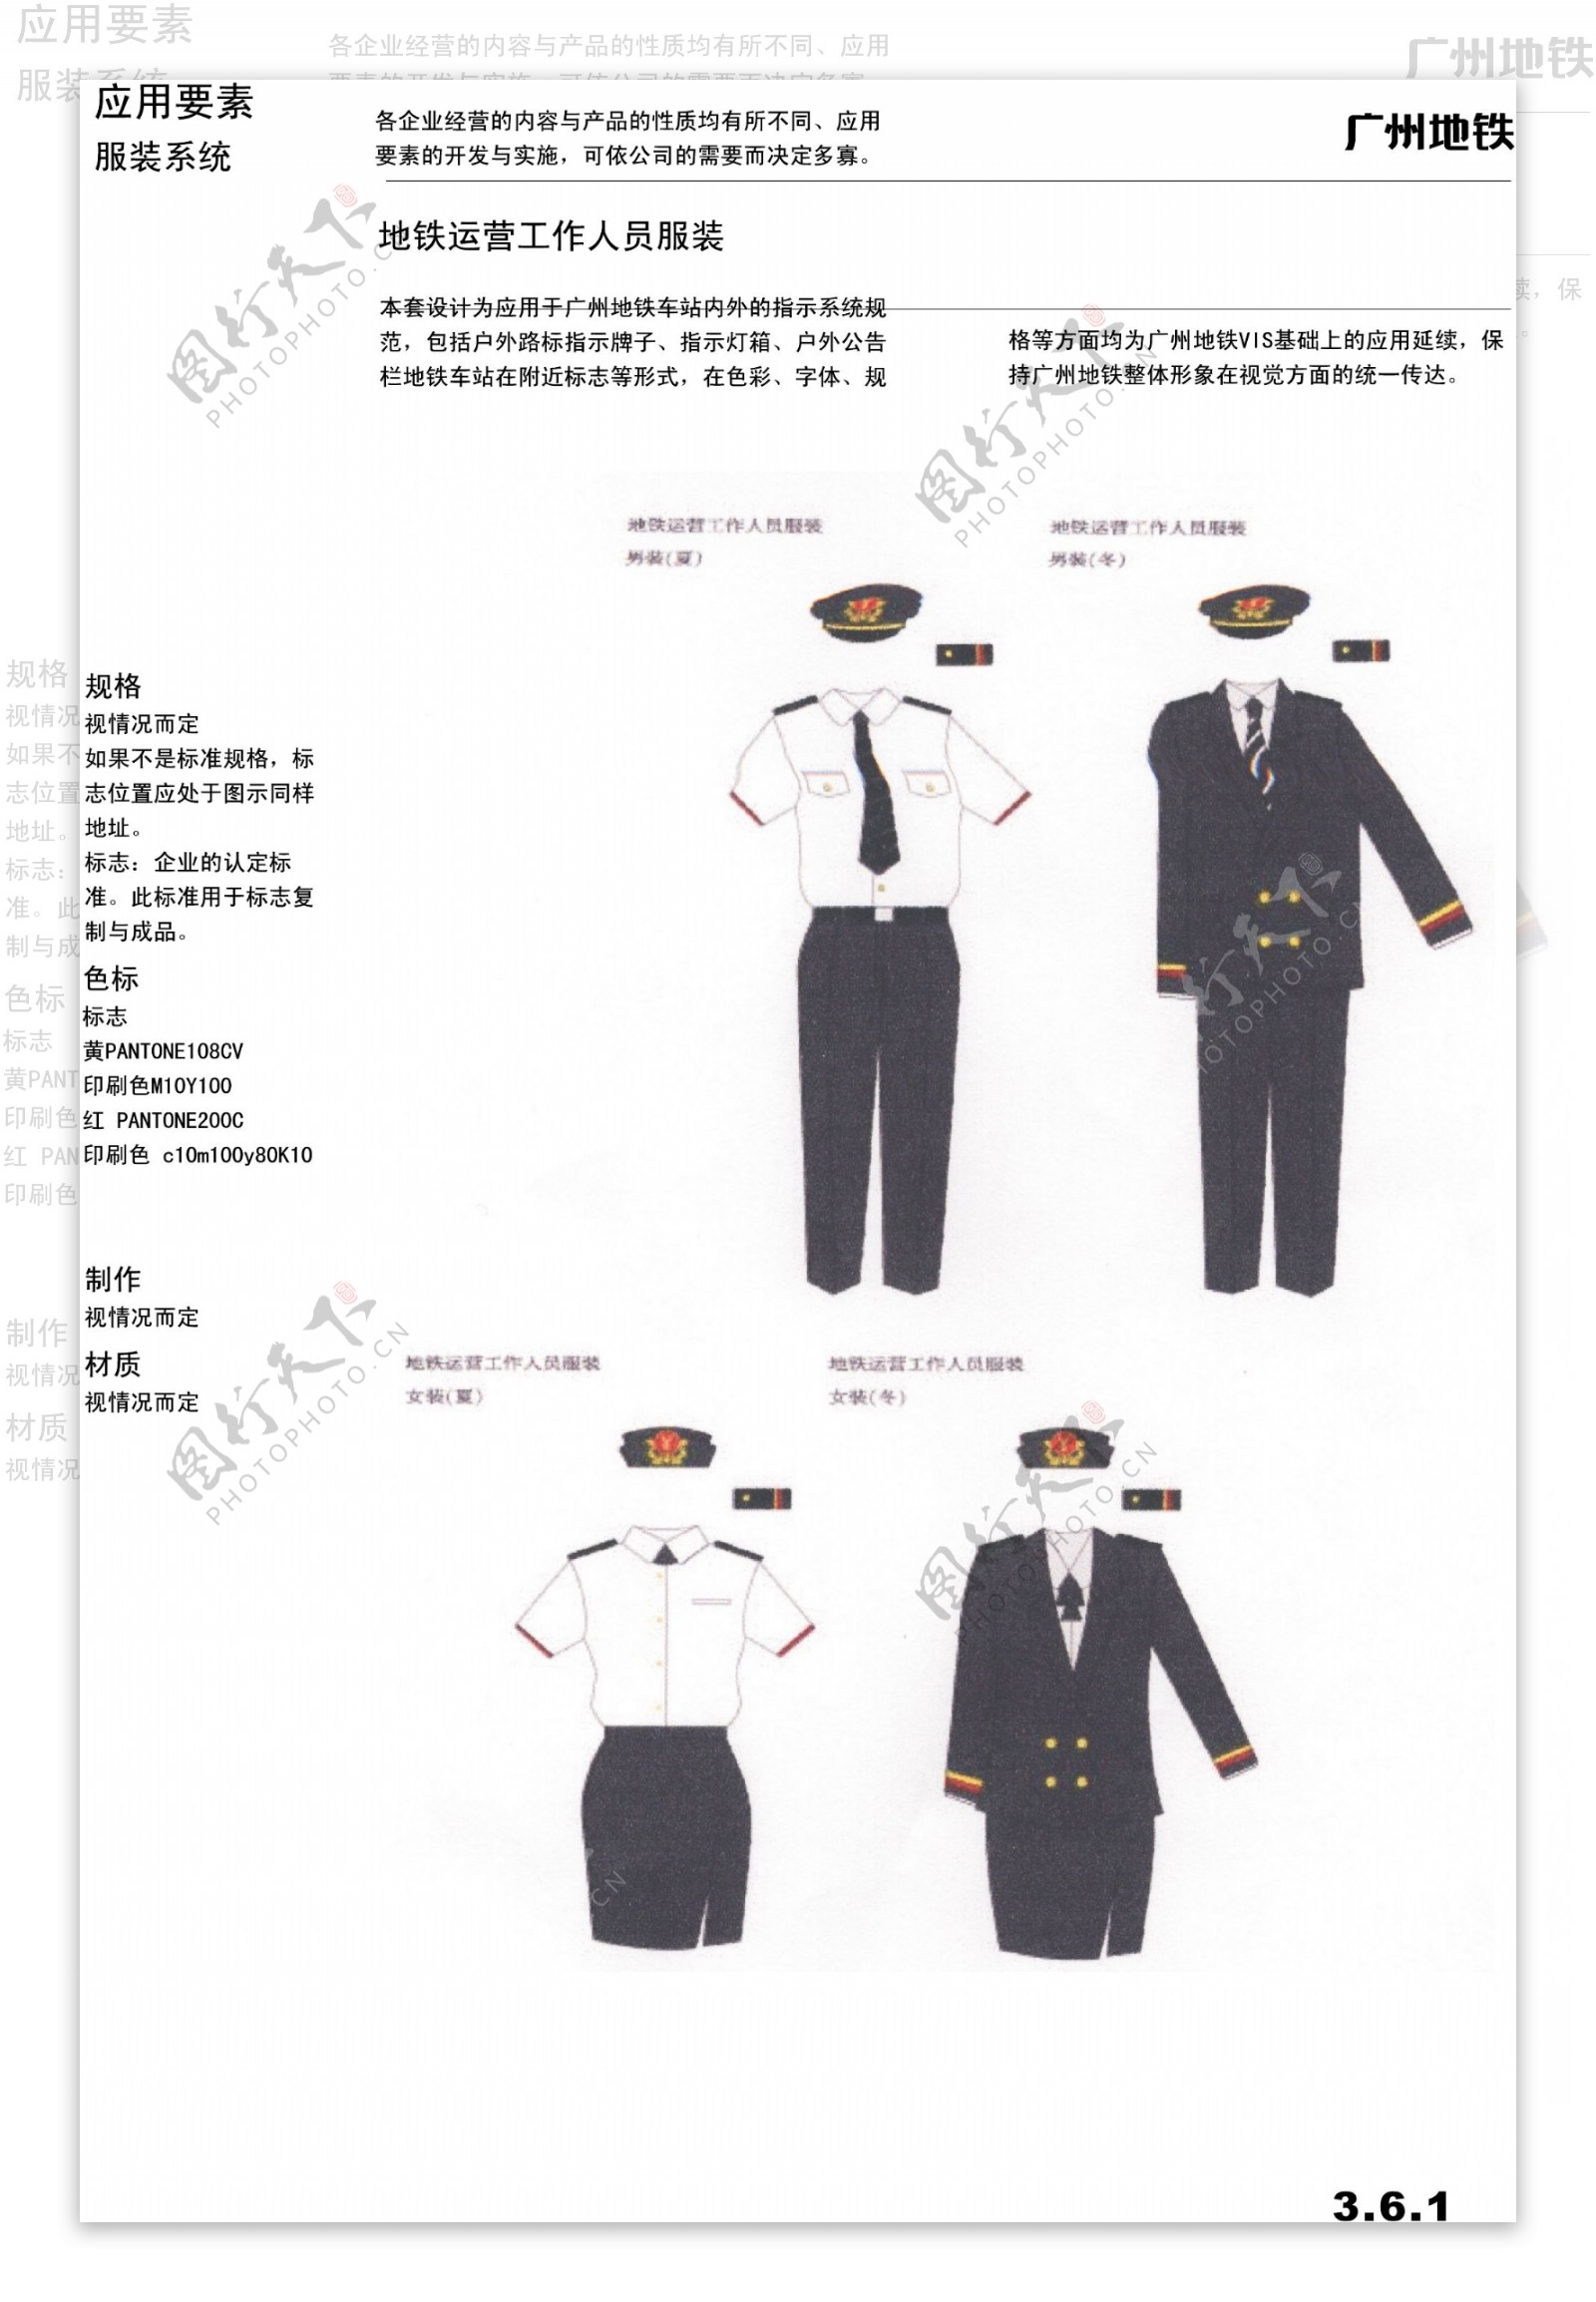 广州地铁VIS保安工作服设计